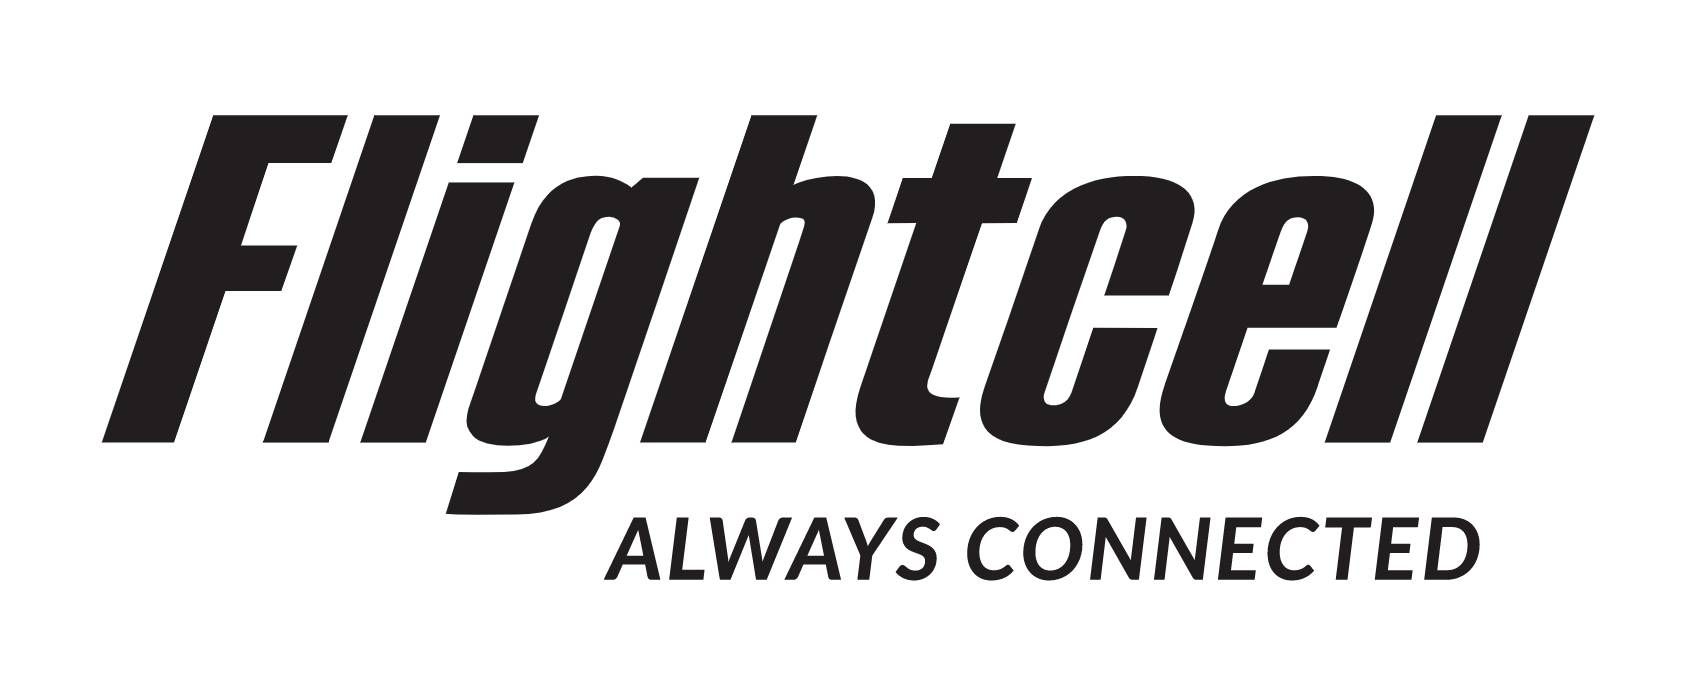 Flightcell International Ltd